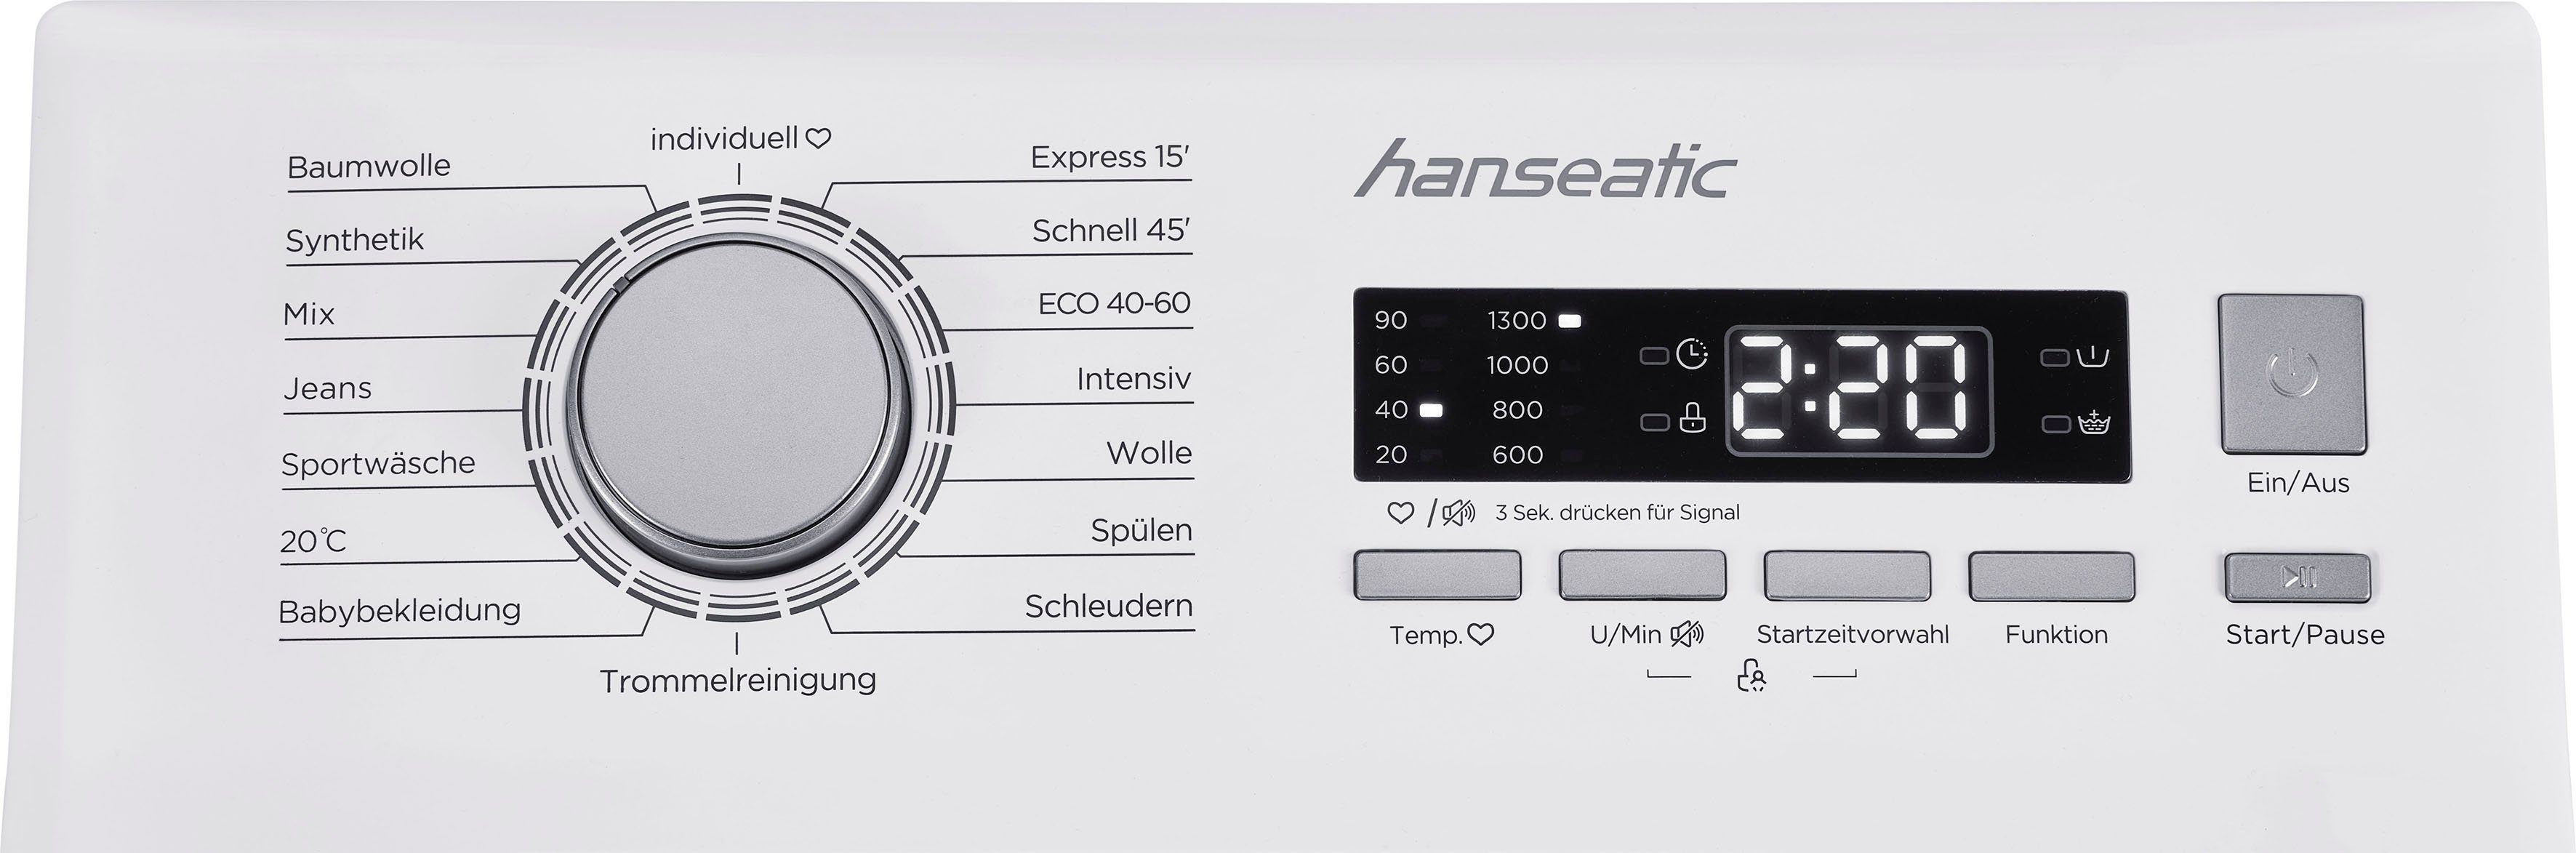 Waschmaschine Toplader HTW8013C, kg, 8 U/min, Überlaufschutzsystem Mengenautomatik, 1300 Hanseatic